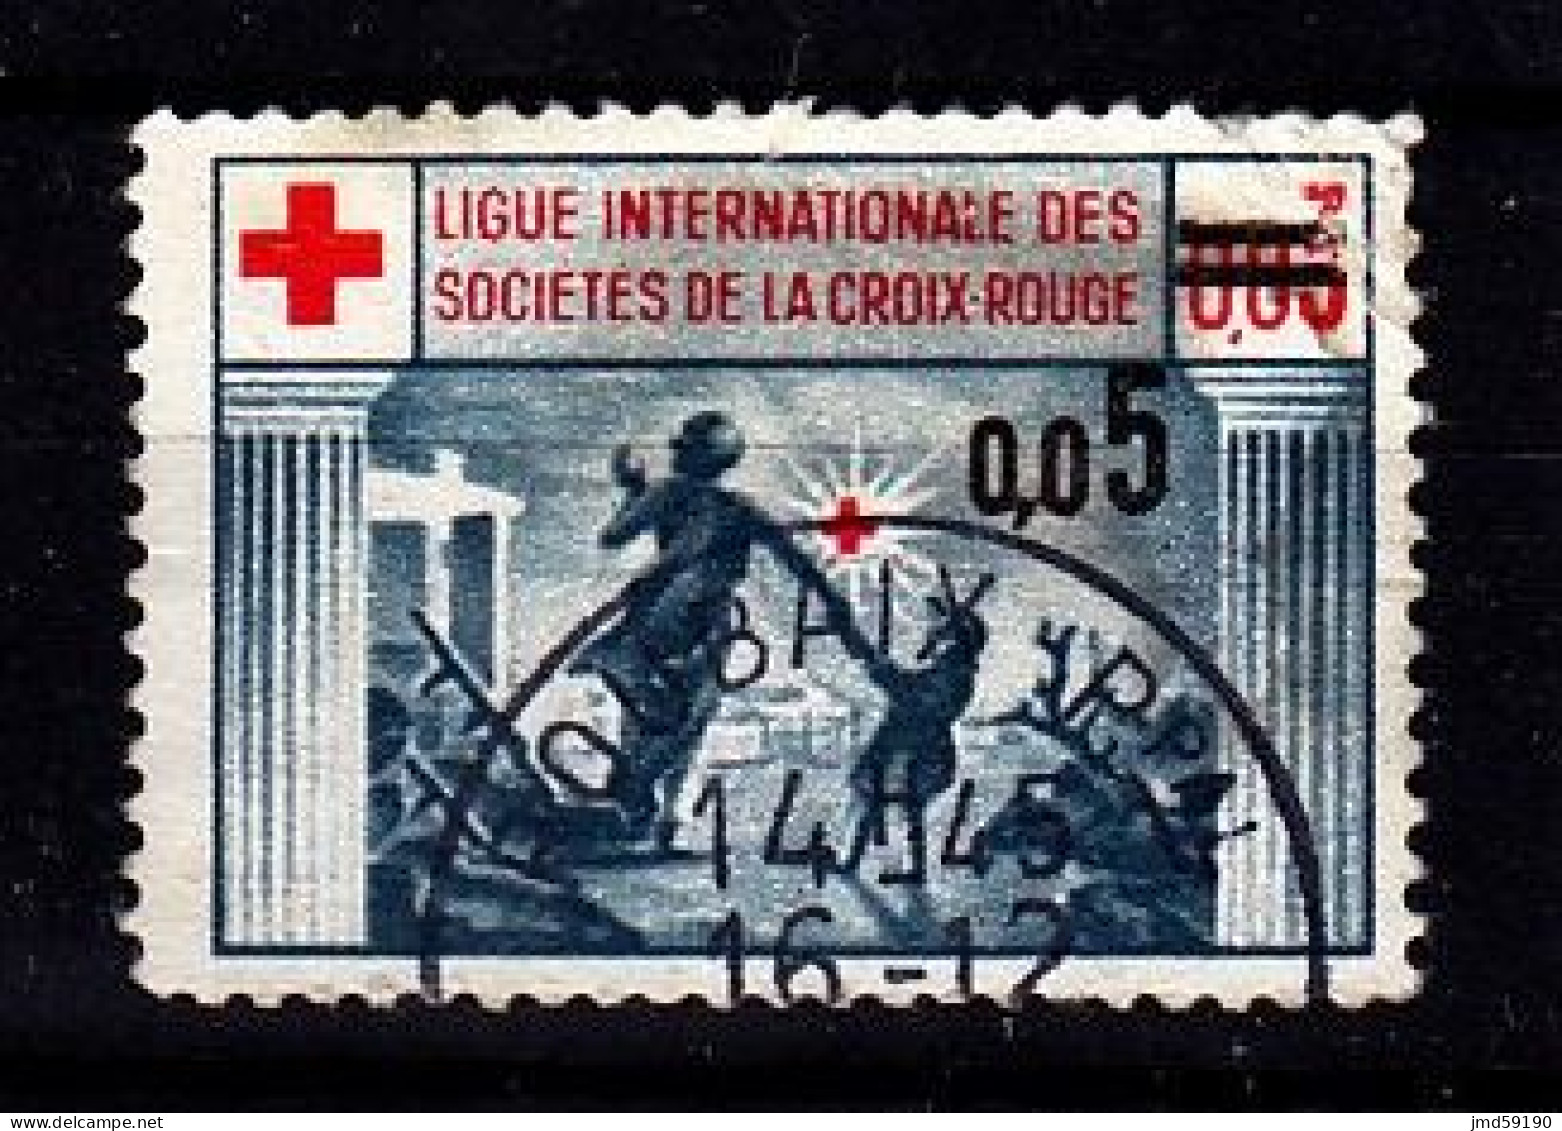 France - Vignette Oblitérée Ligue Internationale Des Sociétés De La Croix Rouge Avec Surcharge 0.05 - Cruz Roja